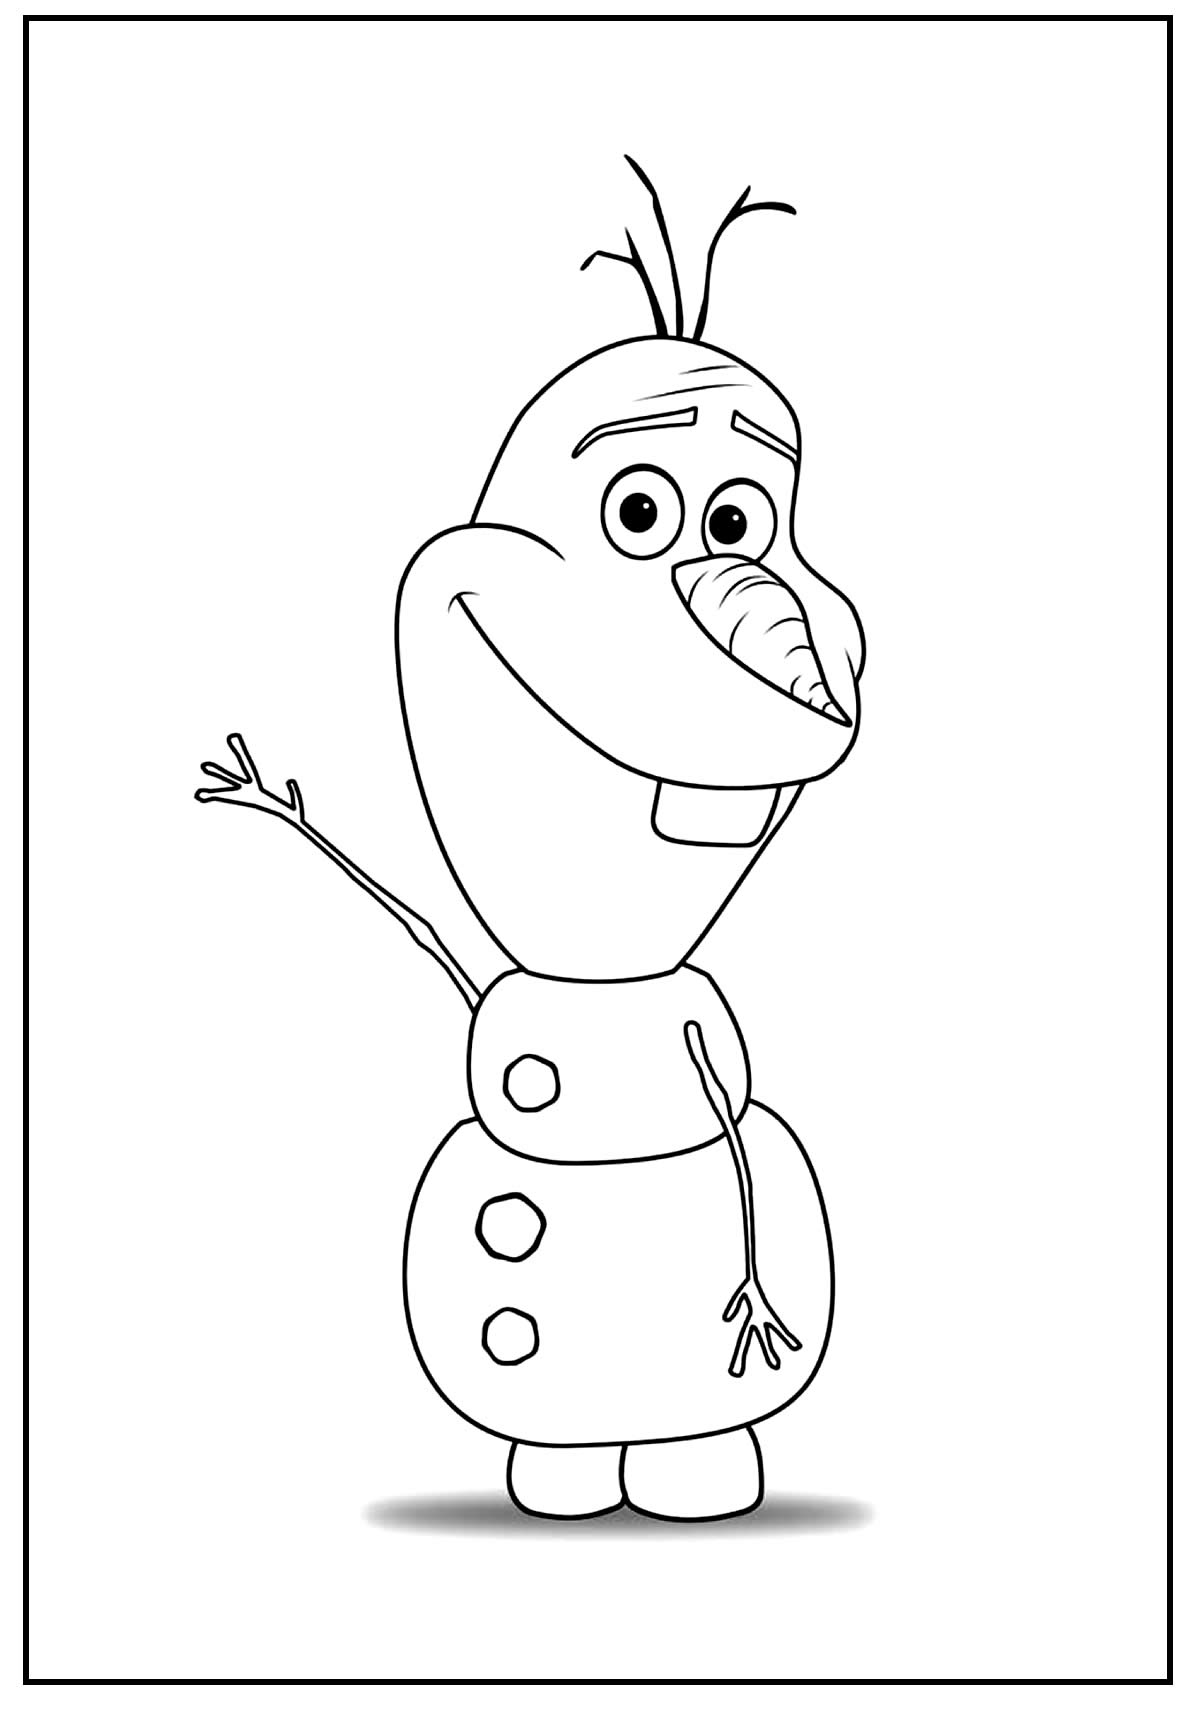 30+ Desenhos para colorir de Olaf - Como fazer em casa